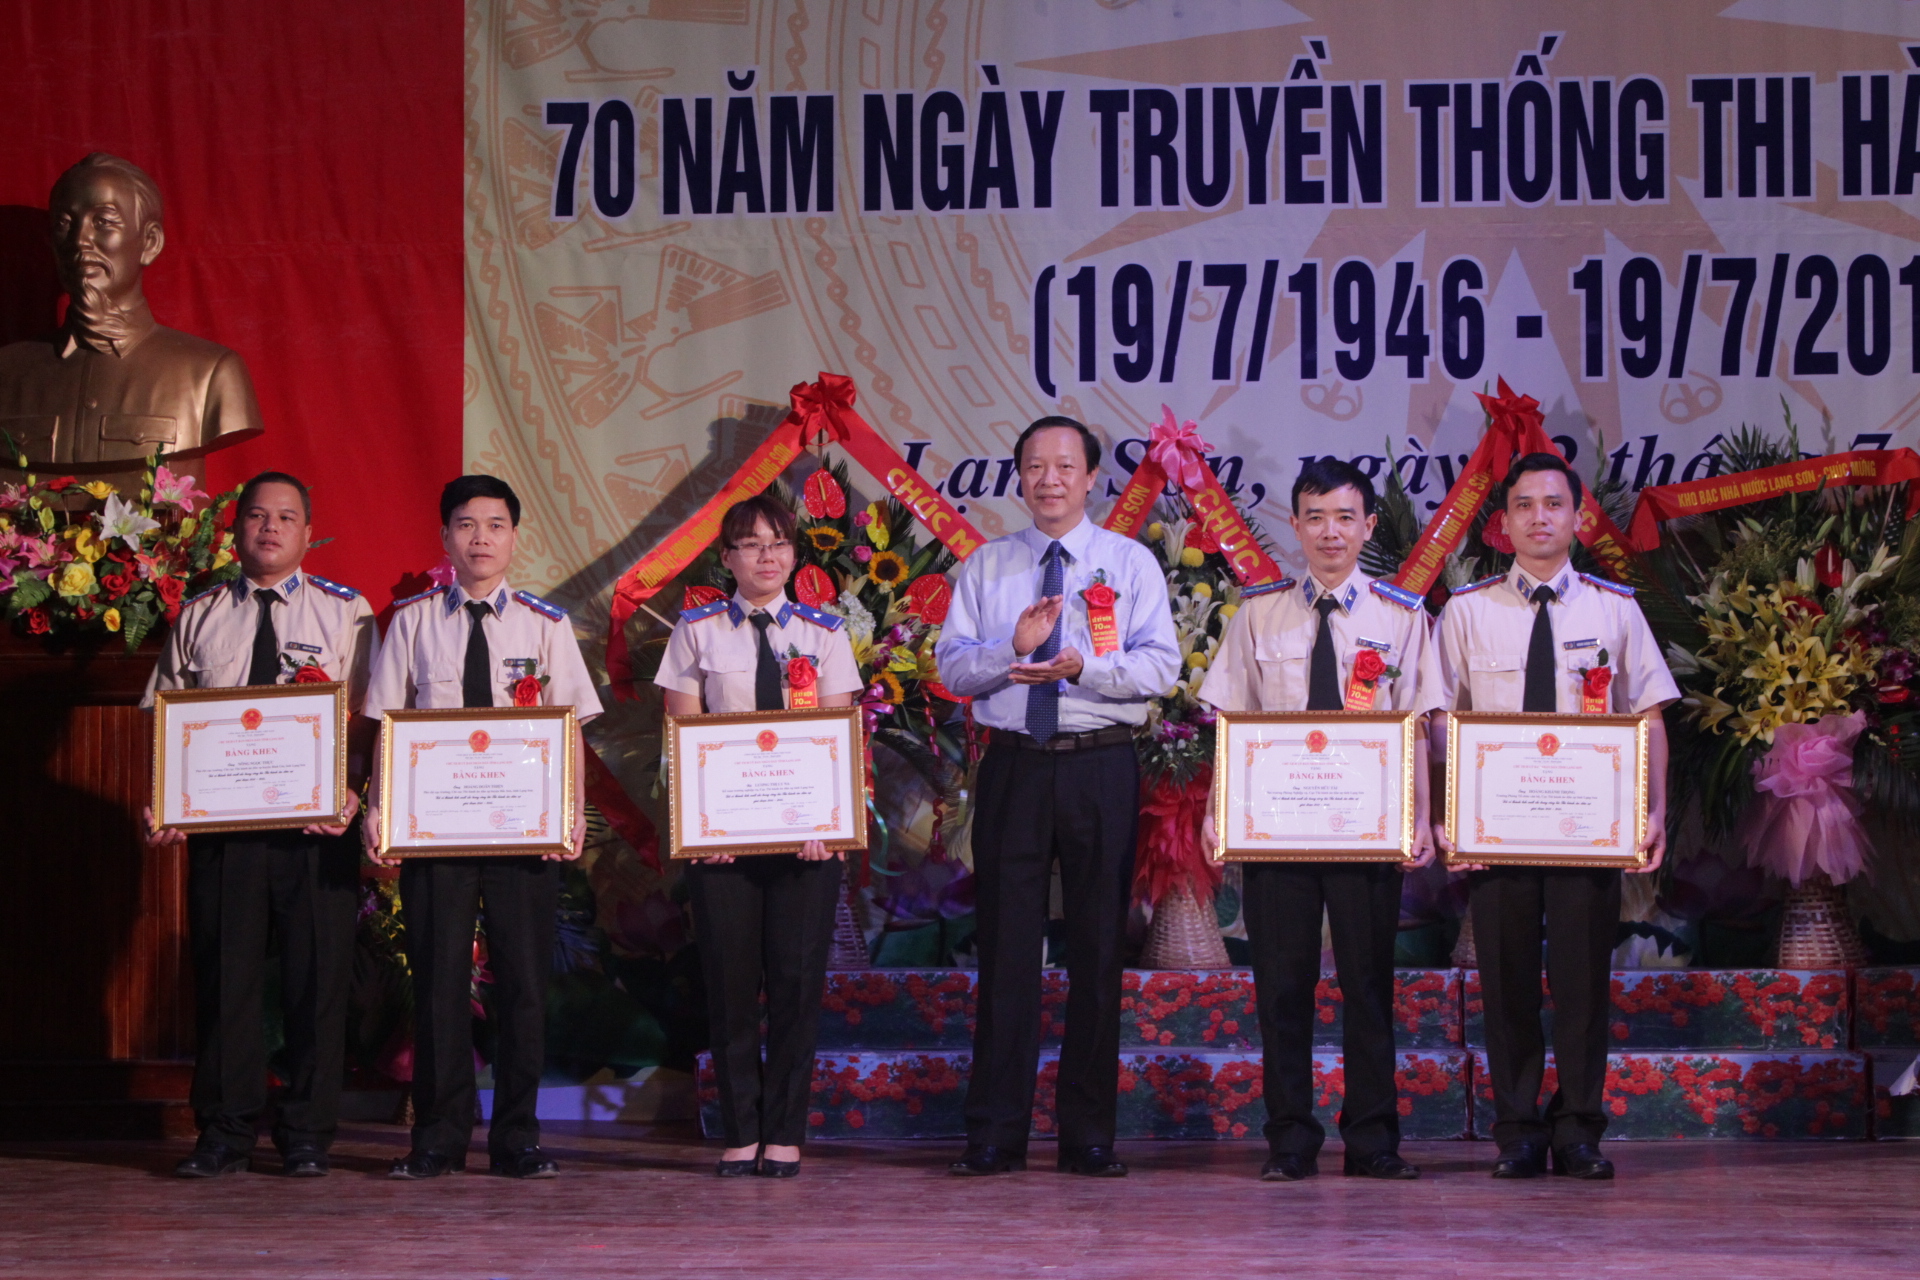 Kỷ niệm 70 năm ngày truyền thống THADS 46